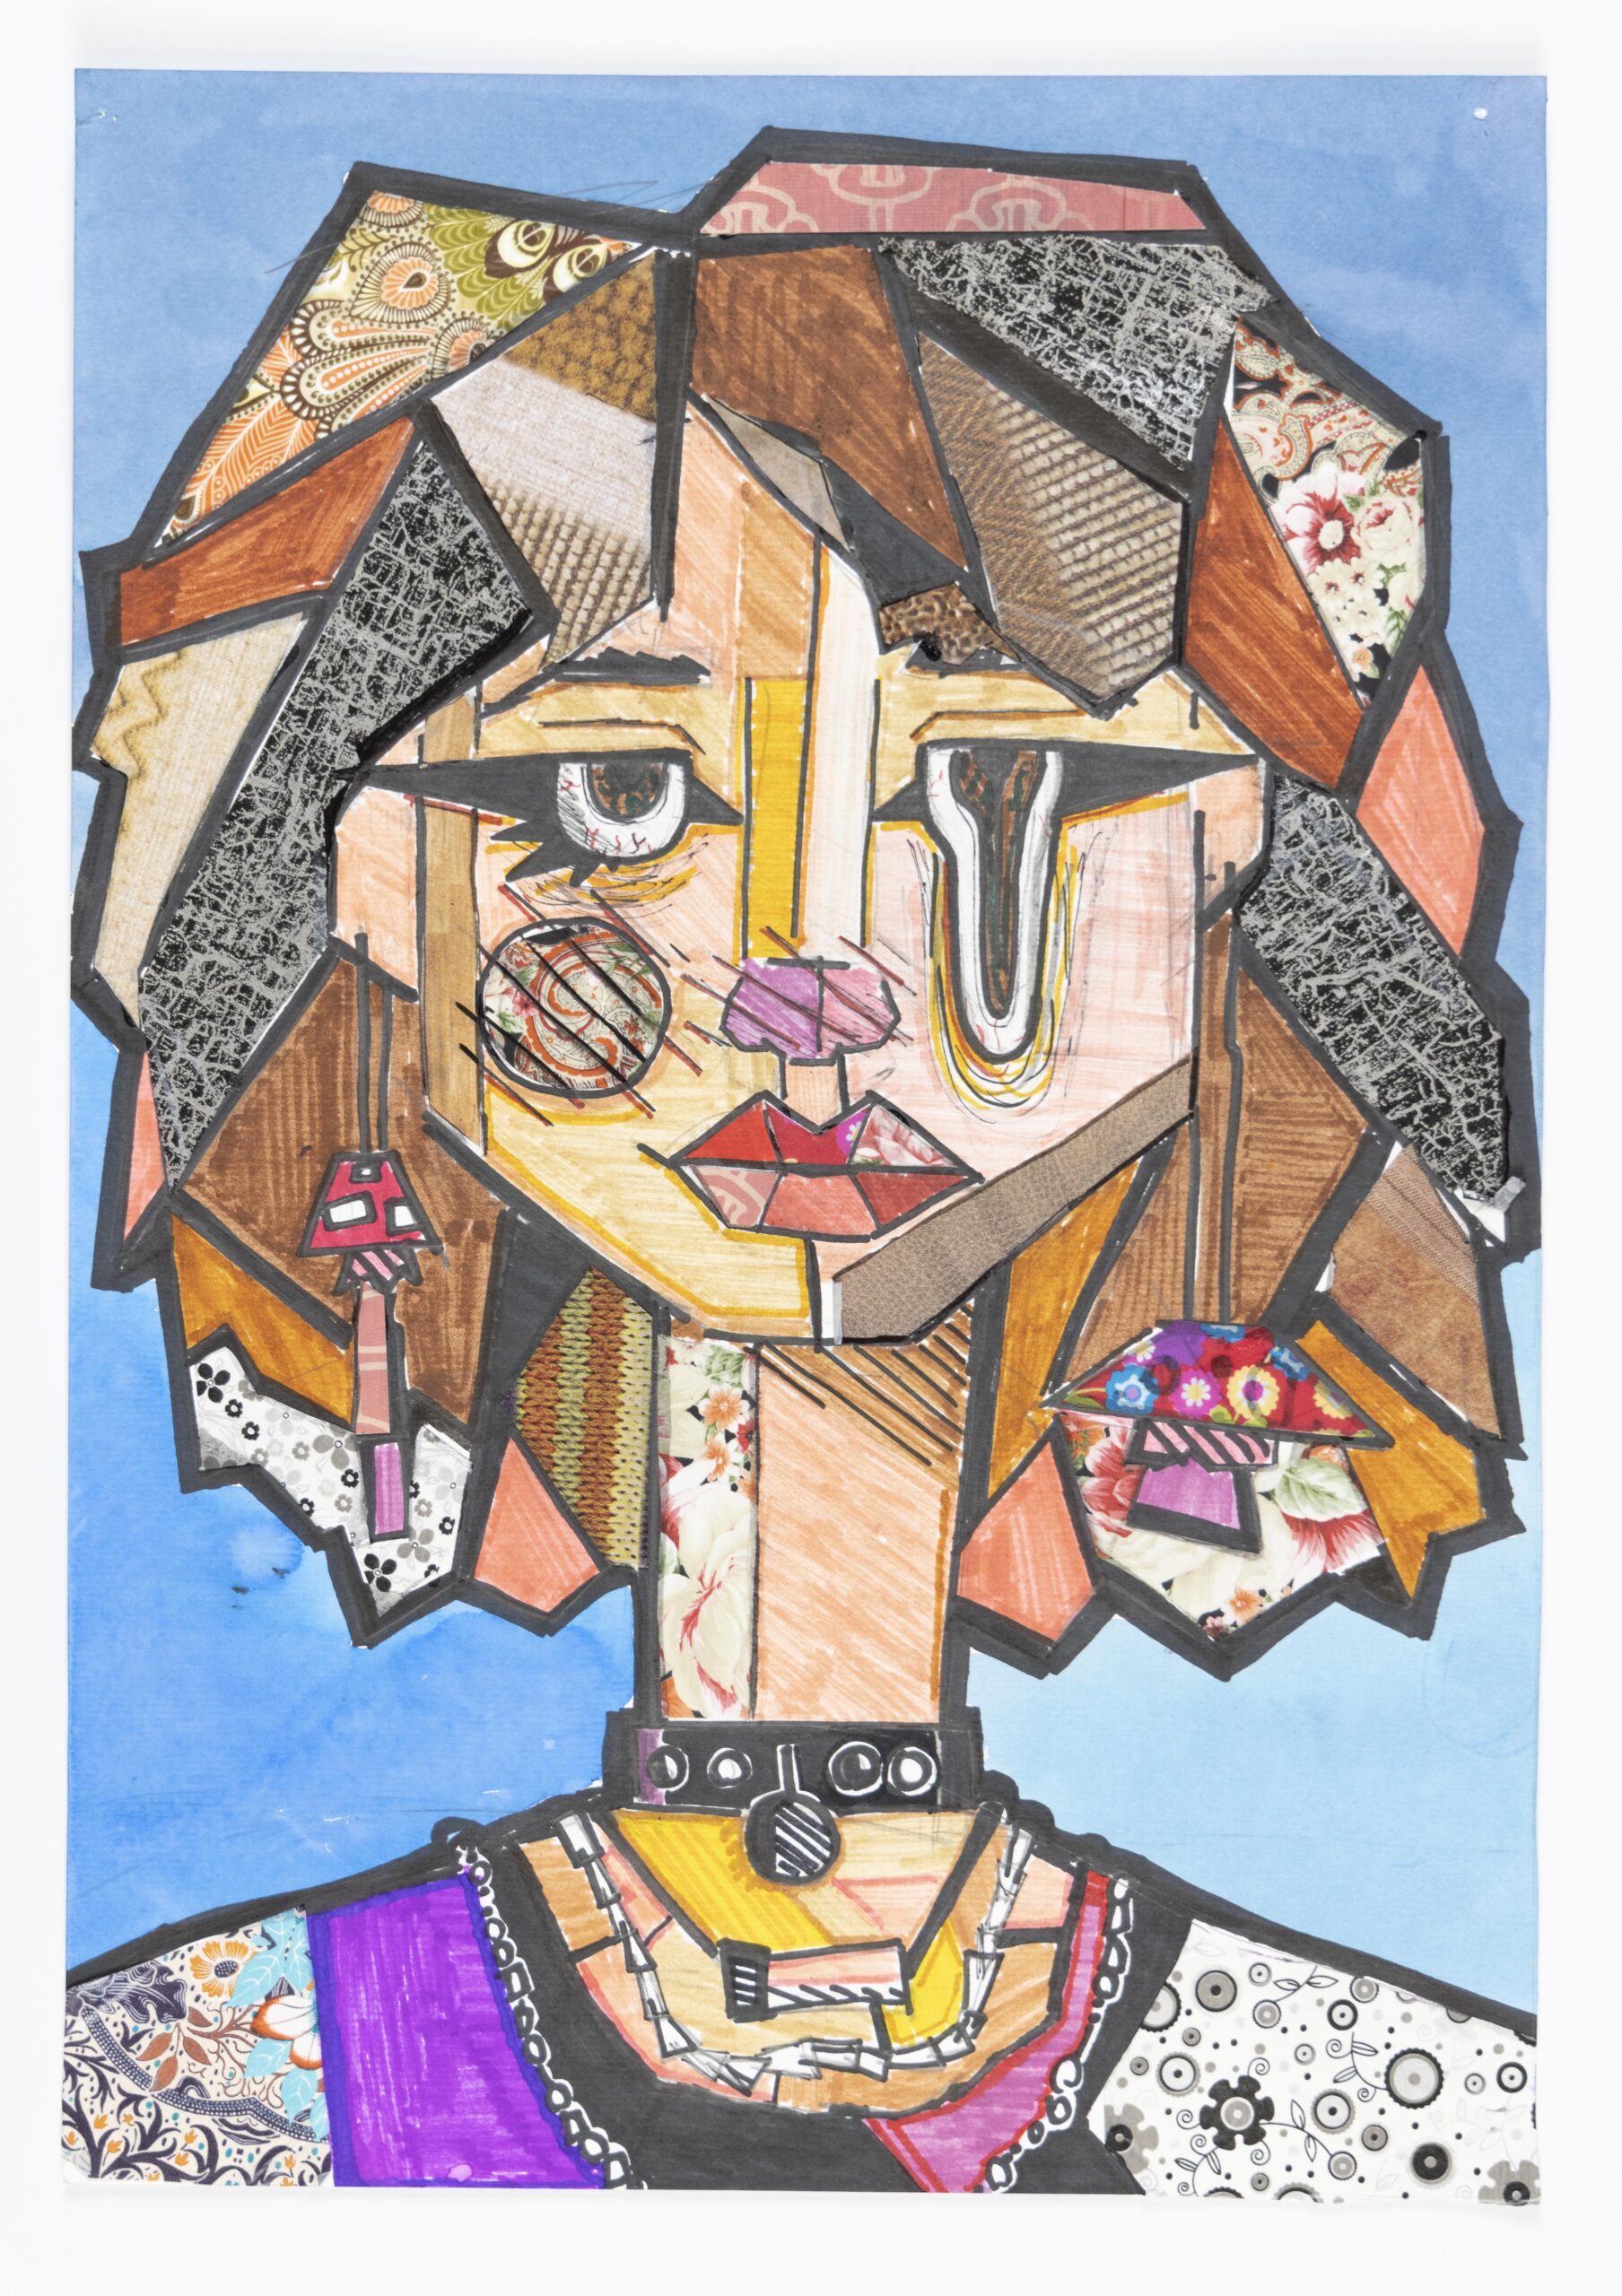 Rysunek przedstawia profil dziewczyny w technice patchwork